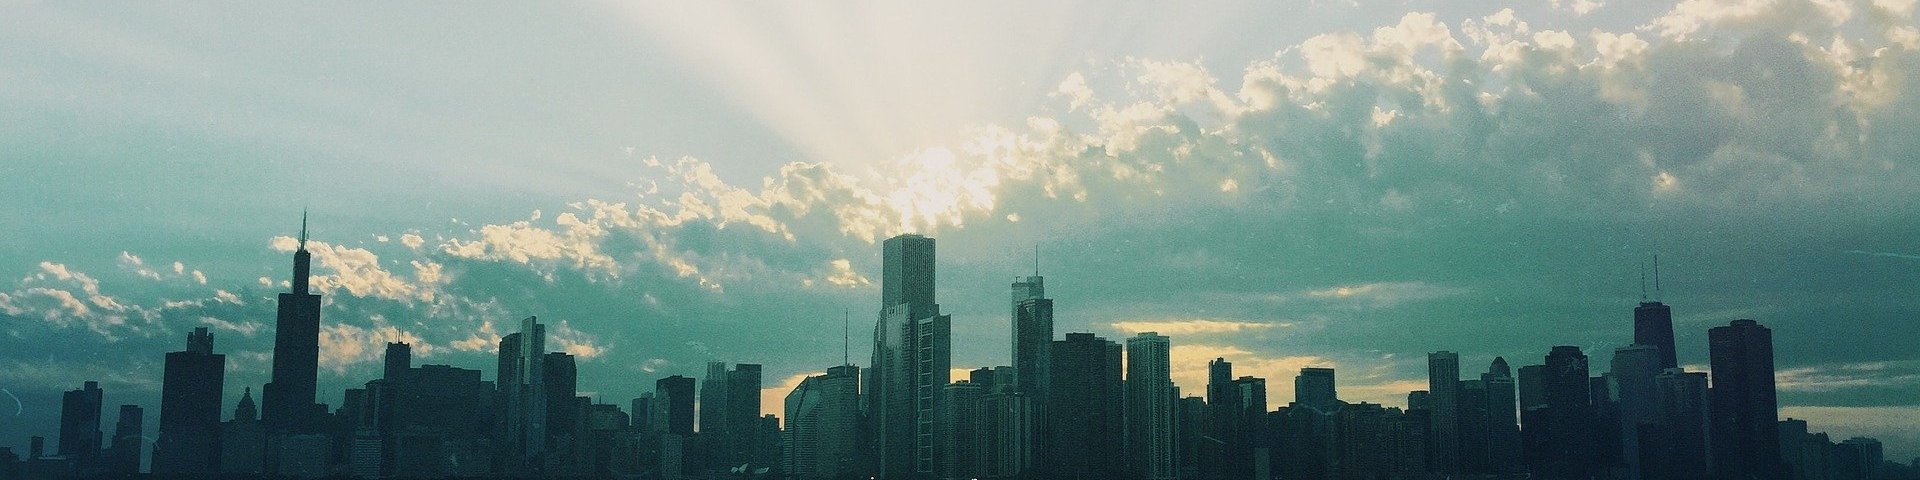 Silhouette einer Stadt mit Wolkenkratzern